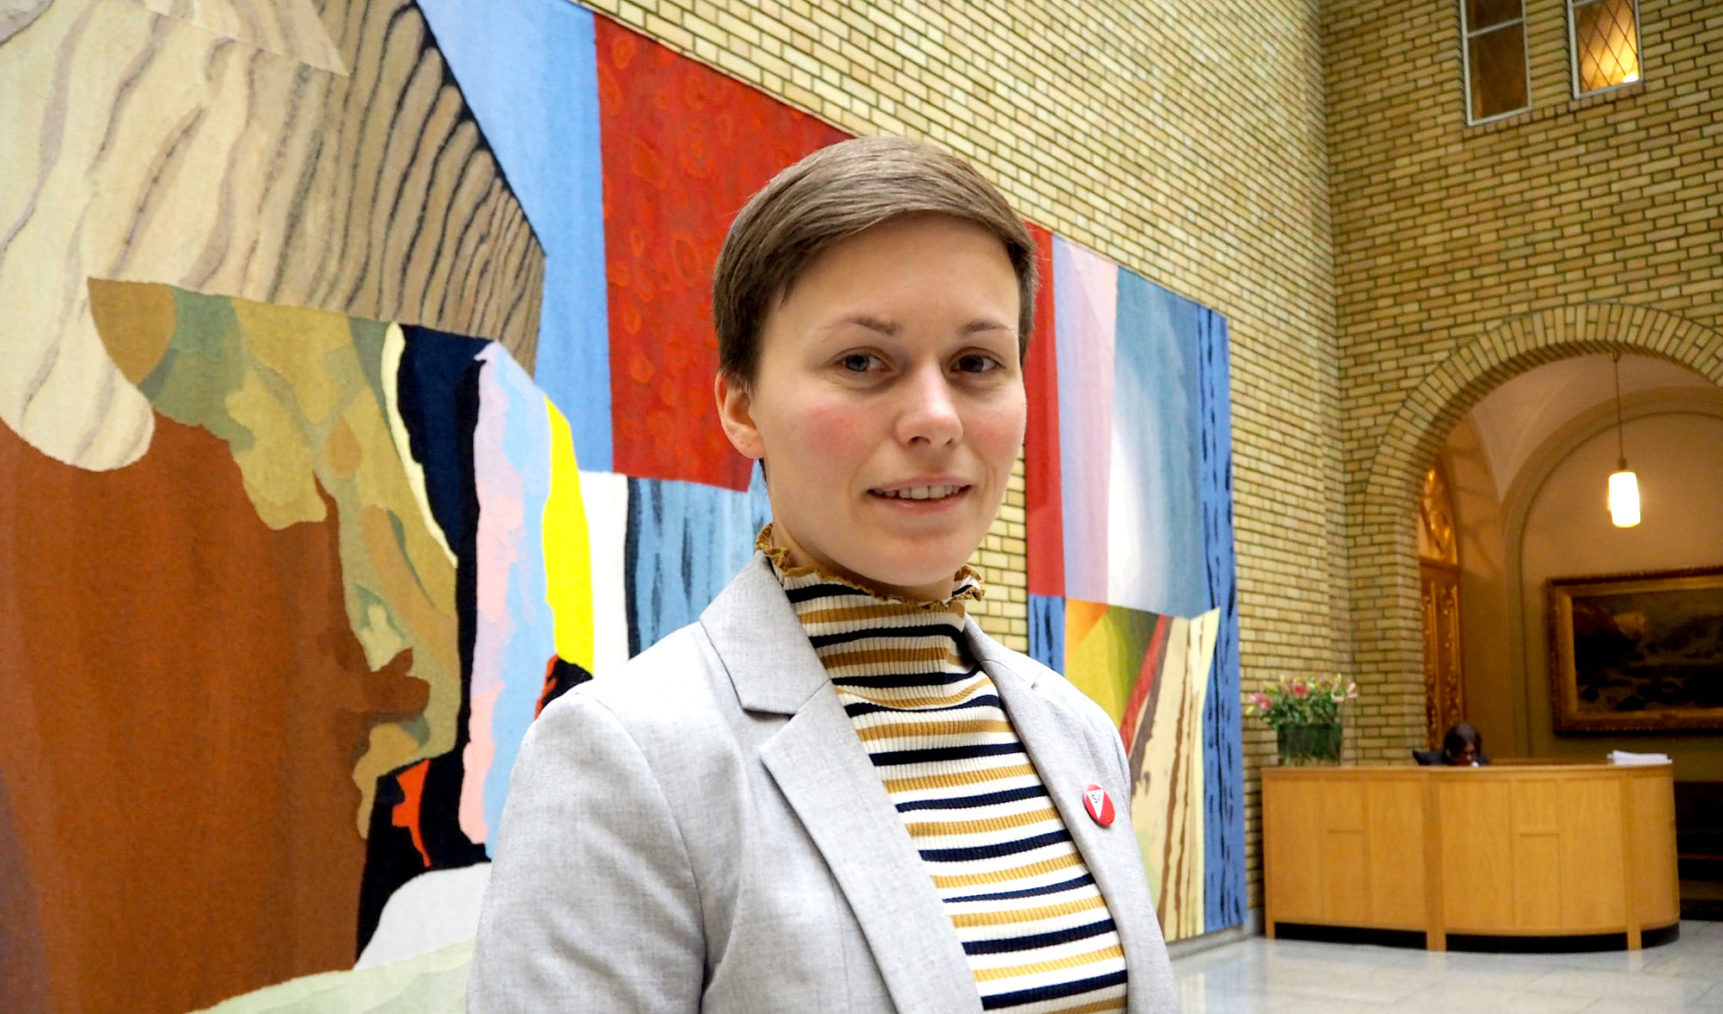 Stortingspolitiker Solfrid Lerbrekke i Vandrehallen på Stortinget.